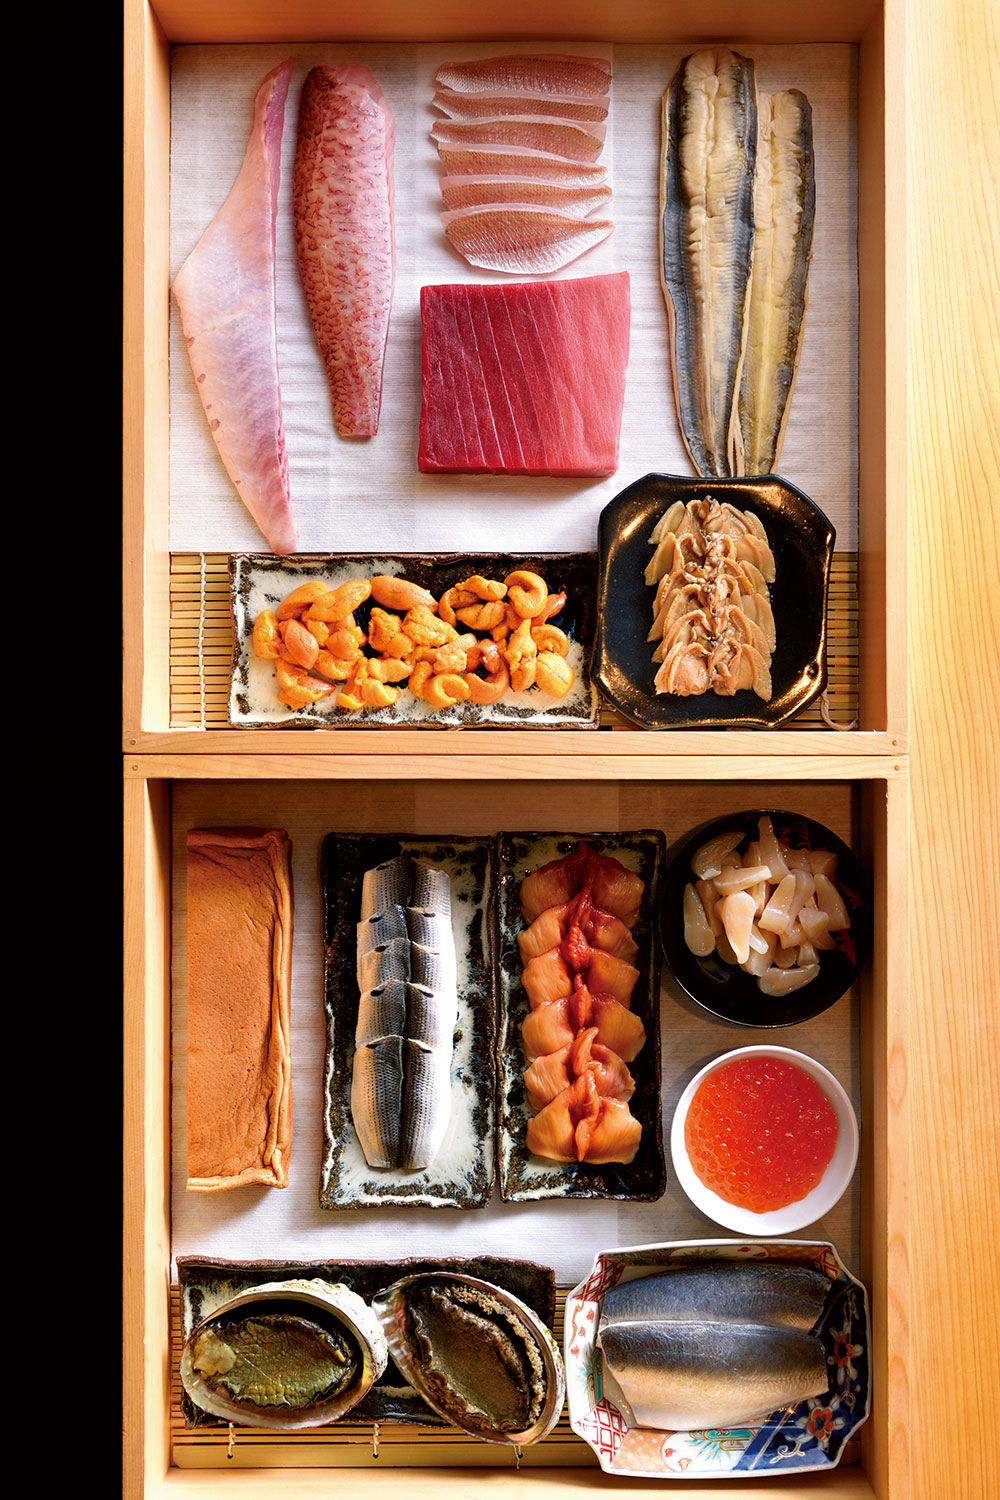 寿司同様、キリリと美しいネタ箱の中身。仕事ぶりはもちろん、並べ方にも店主のセンスを感じる。